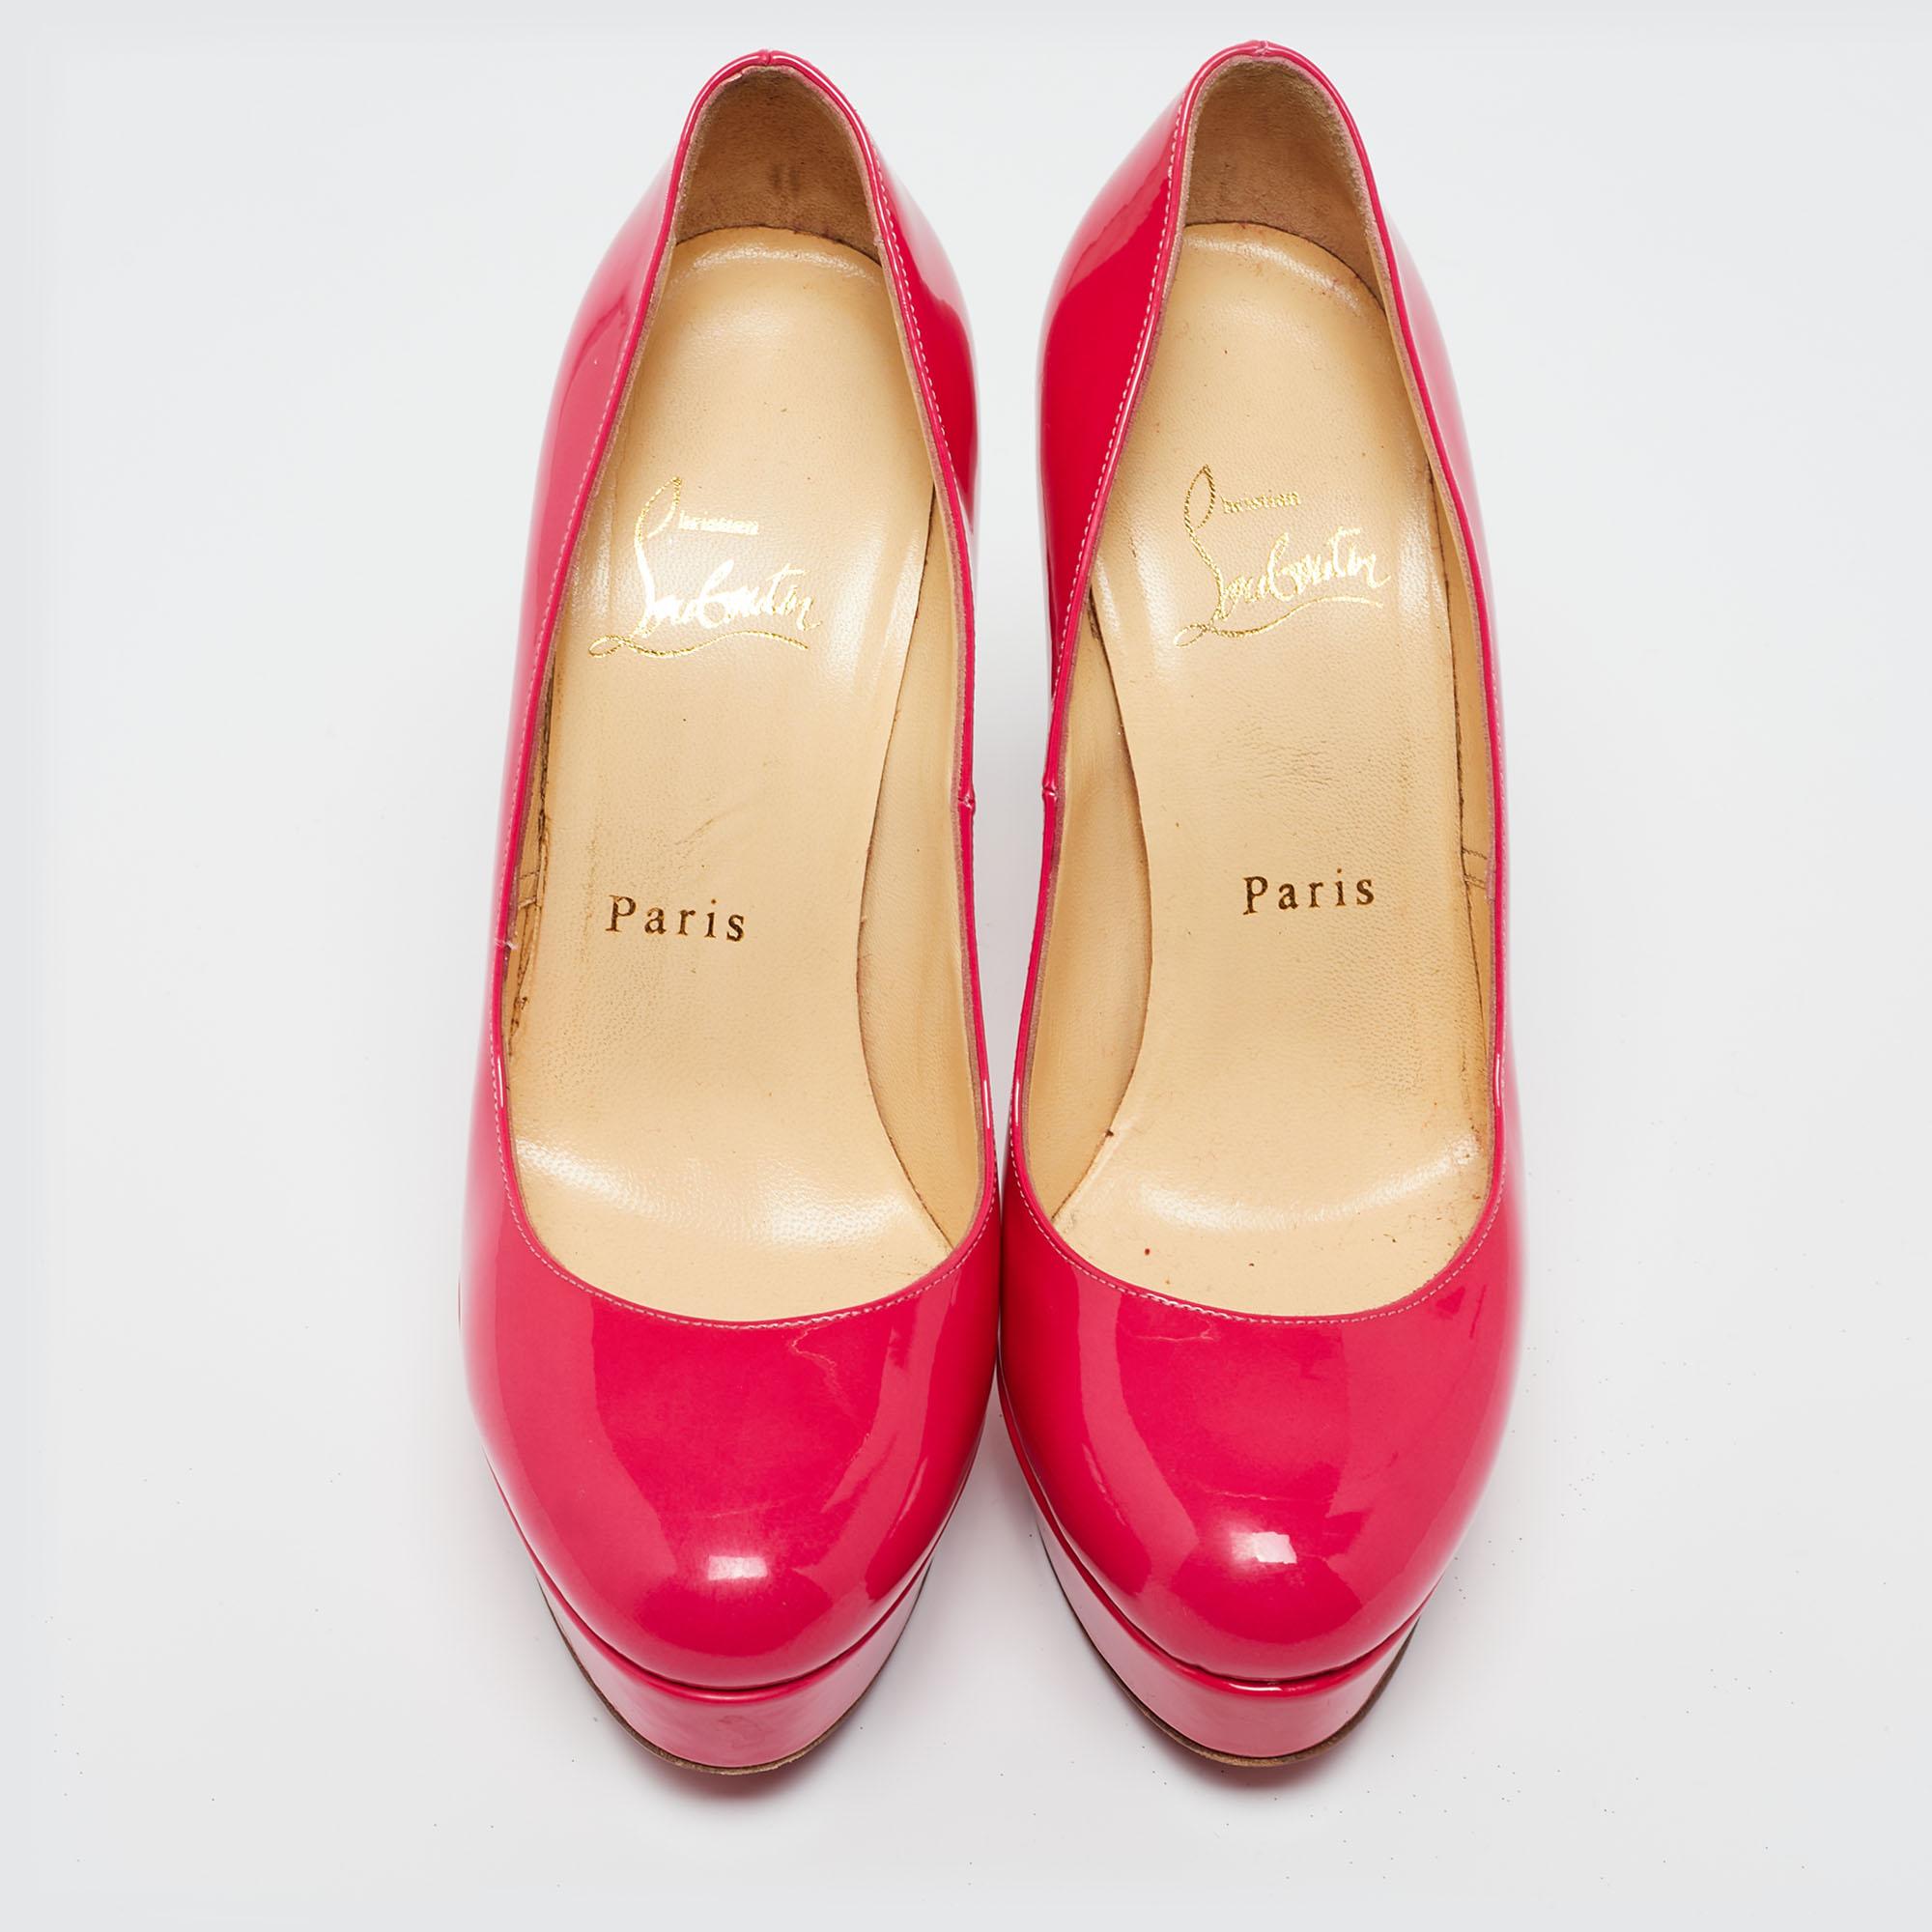 Ein Klassiker, den man in seine Schuhsammlung aufnehmen sollte, ist dieses Paar. Diese Christian Louboutin-Schönheiten sind mit Lackleder überzogen und mit Plateausohlen, 12,5 cm hohen Absätzen und den charakteristischen roten Sohlen ausgestattet.